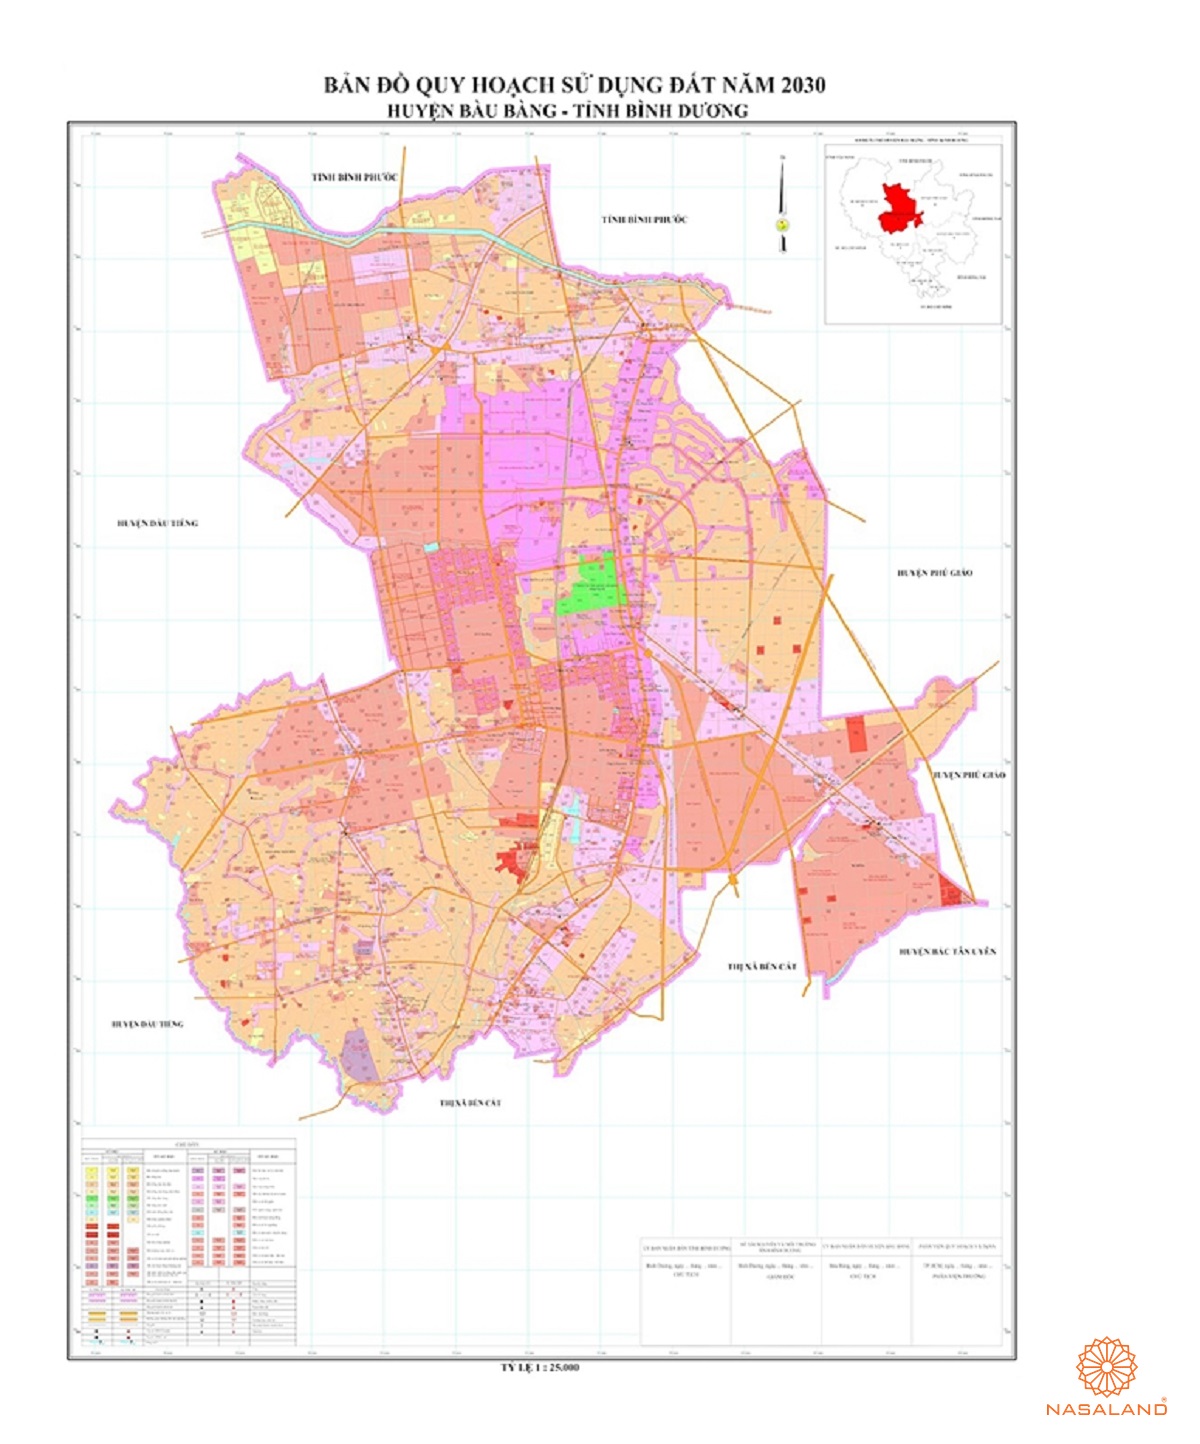 Quy hoạch sử dụng đất Huyện Bàu Bàng thể hiện trên bản đồ quy hoạch phân khu tỷ lệ 1/2000 của Tỉnh Bình Dương